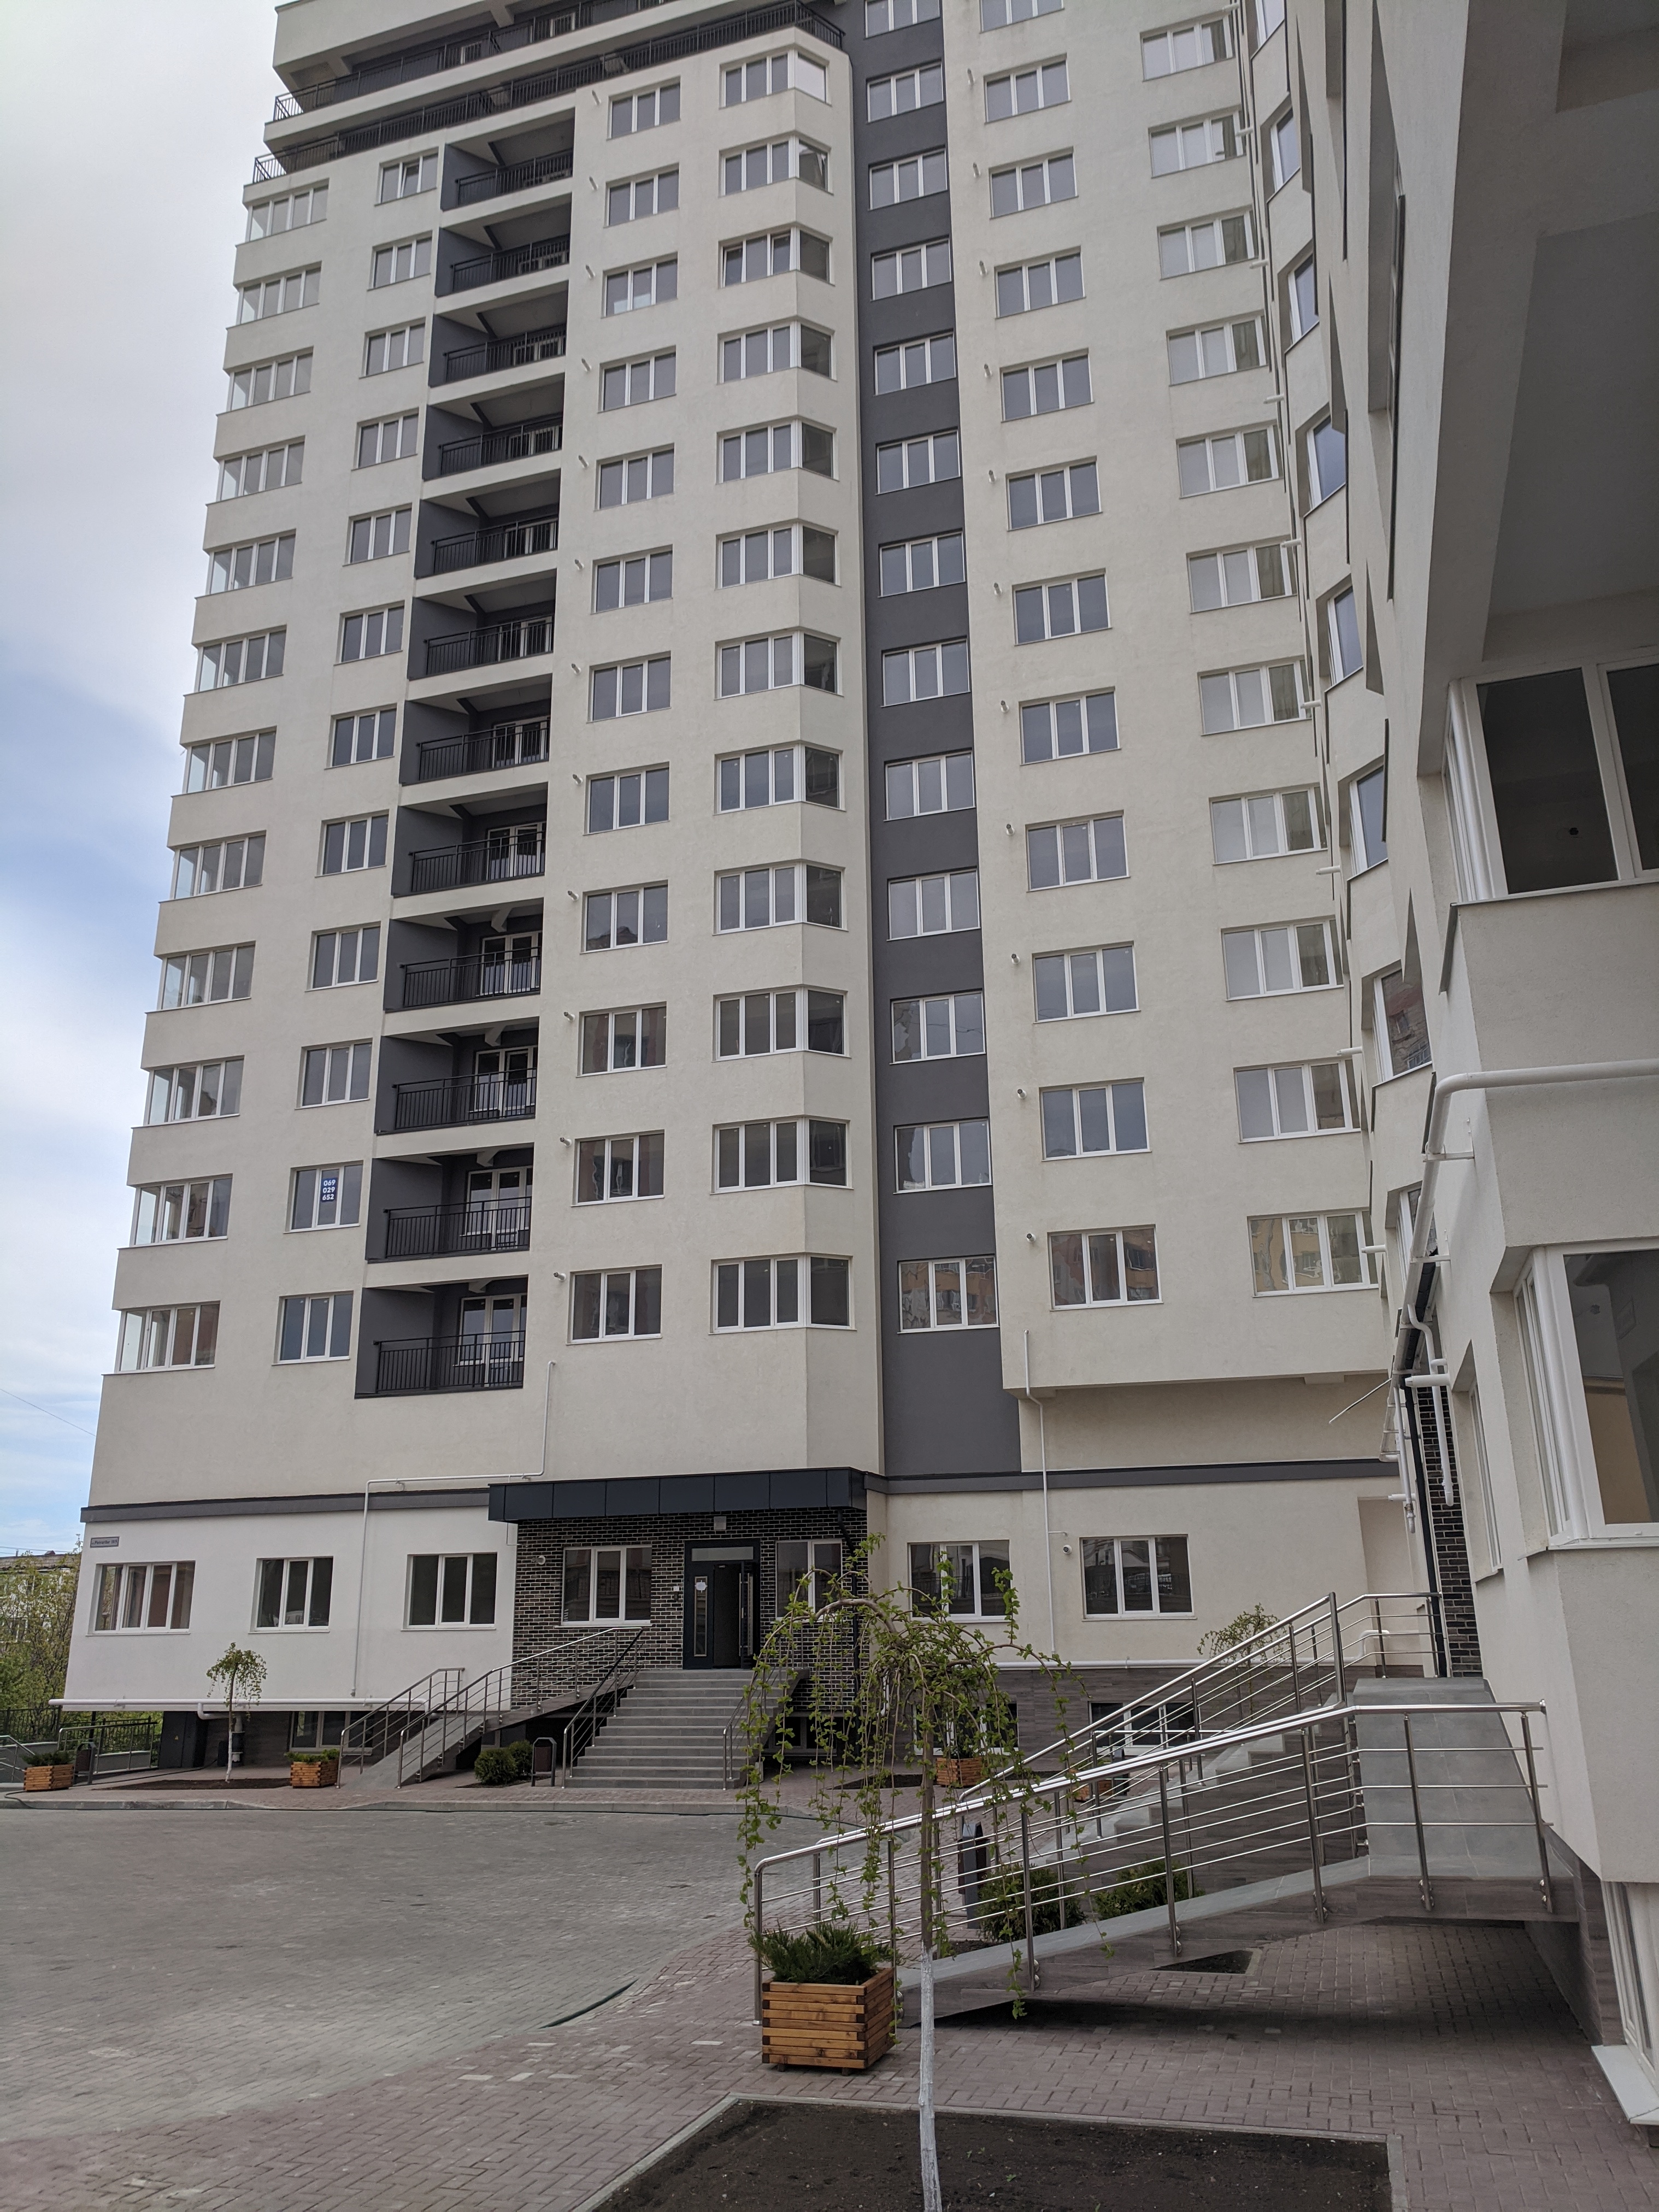 VÂNDUT Apartament de vânzare, Chișinău, sec. Telecentru, bloc nou, 1 odaie cu living, Exfactor, 44 m2, et.5